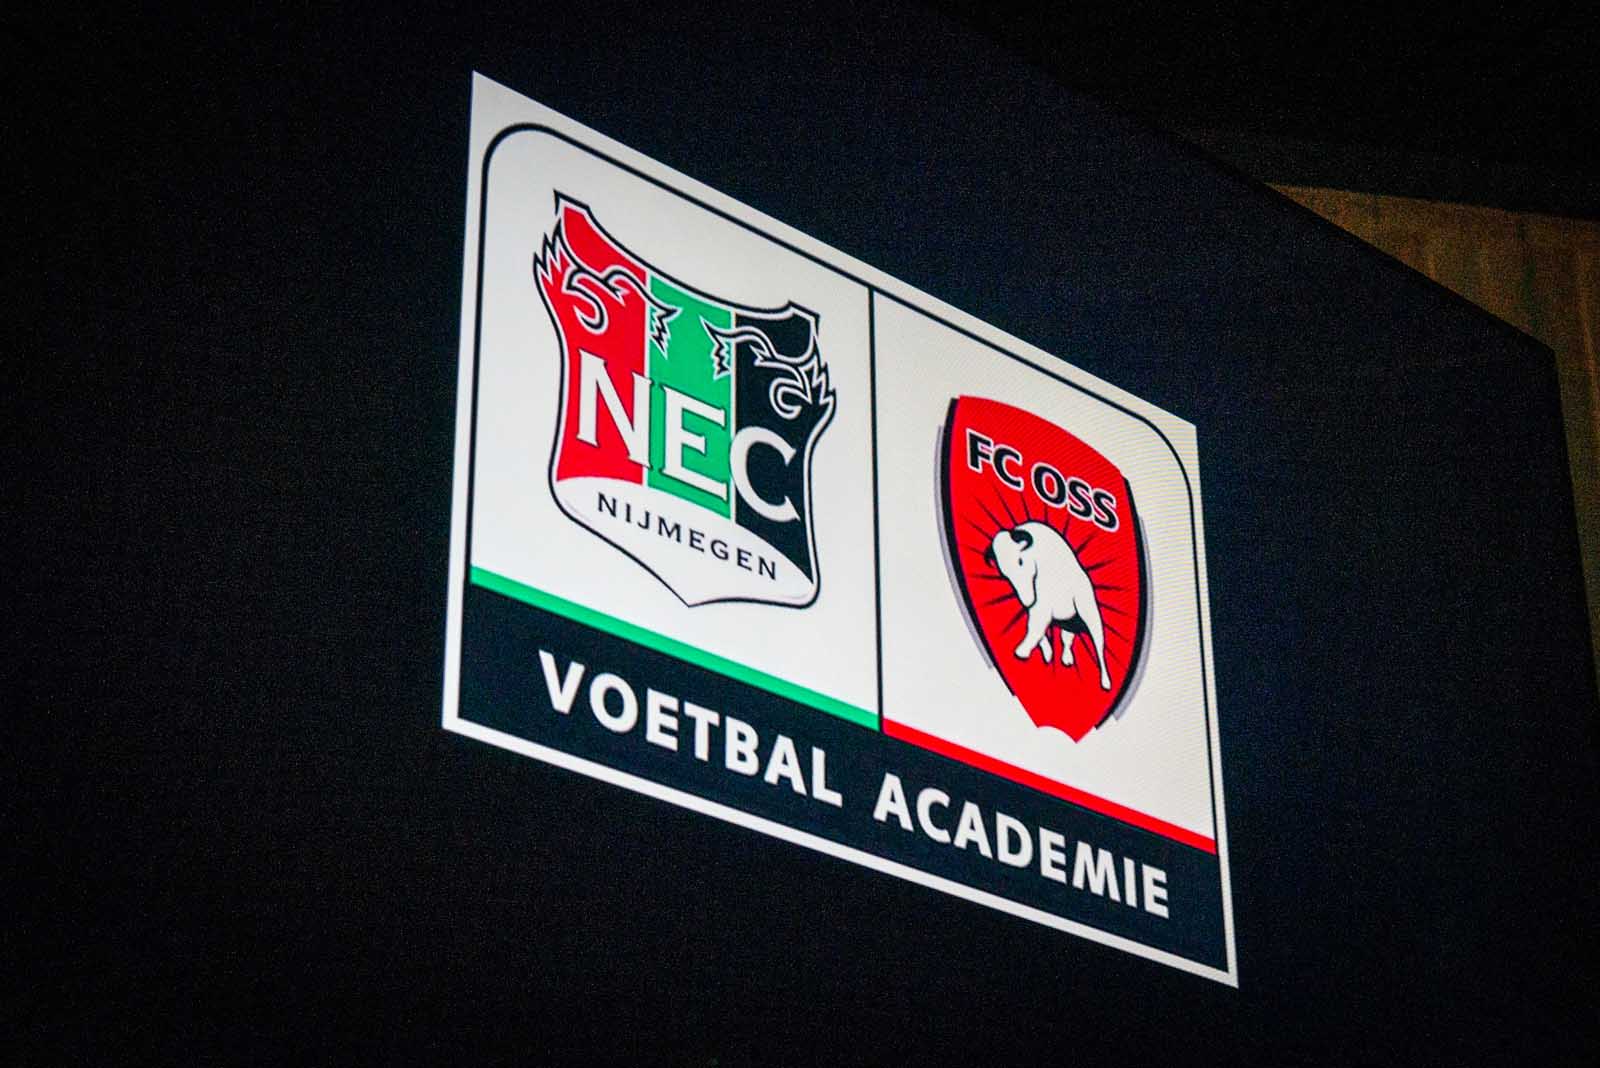 N.E.C. zoekt stagiair(e) videoanalyse bij Voetbal Academie N.E.C./FC Oss